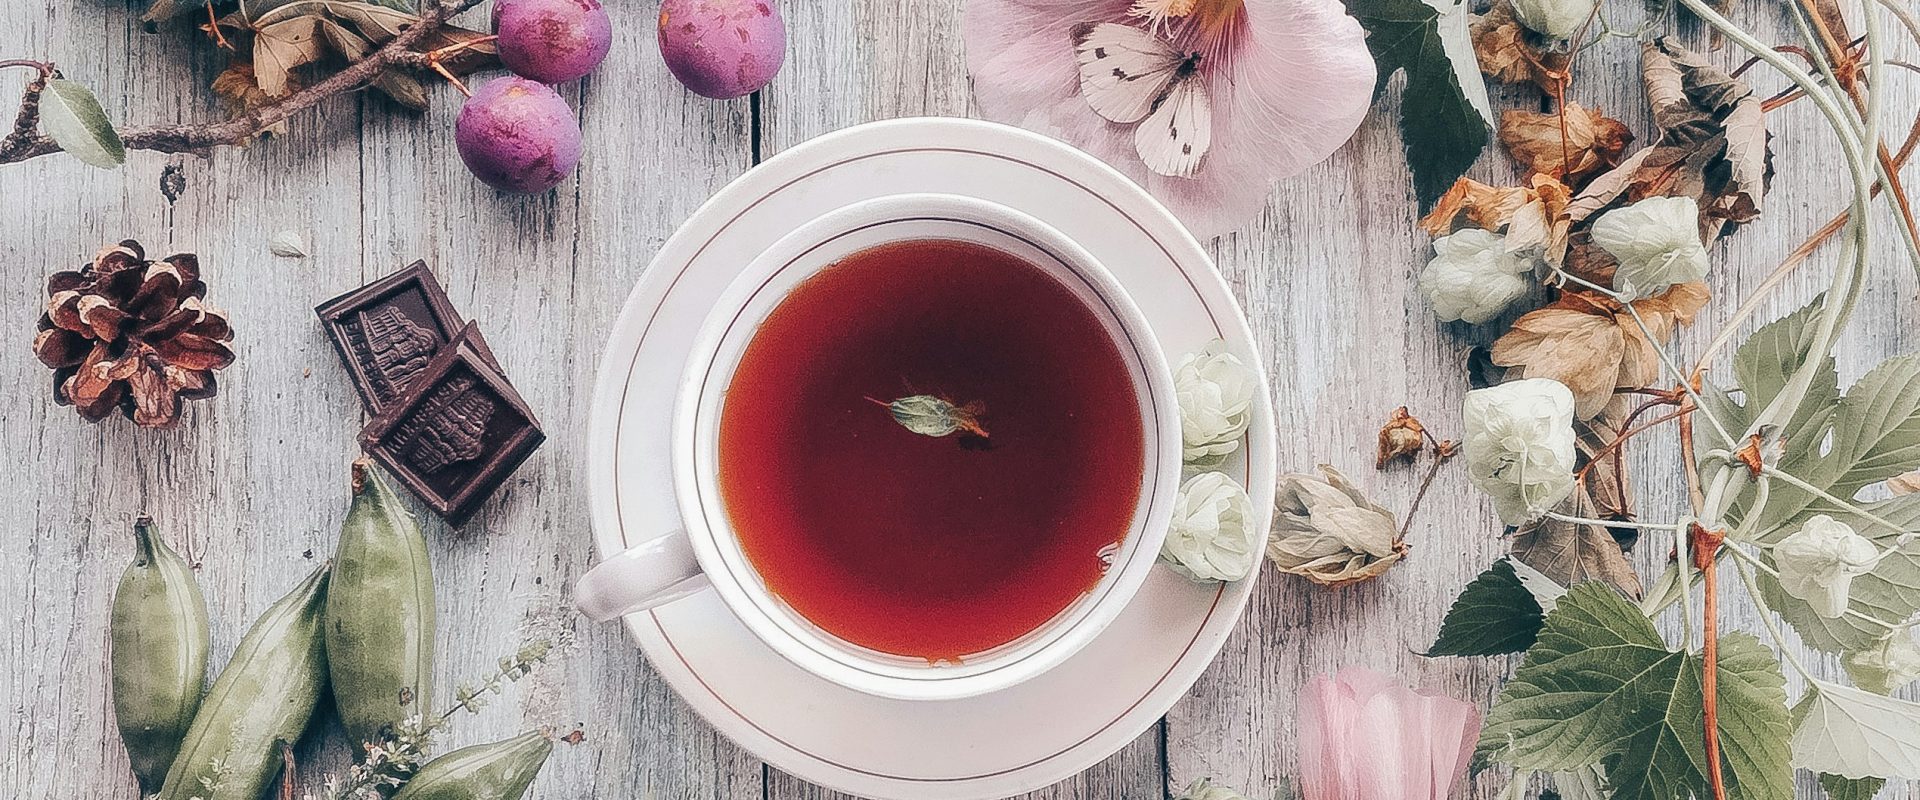 Tips to help you grow your own tea garden